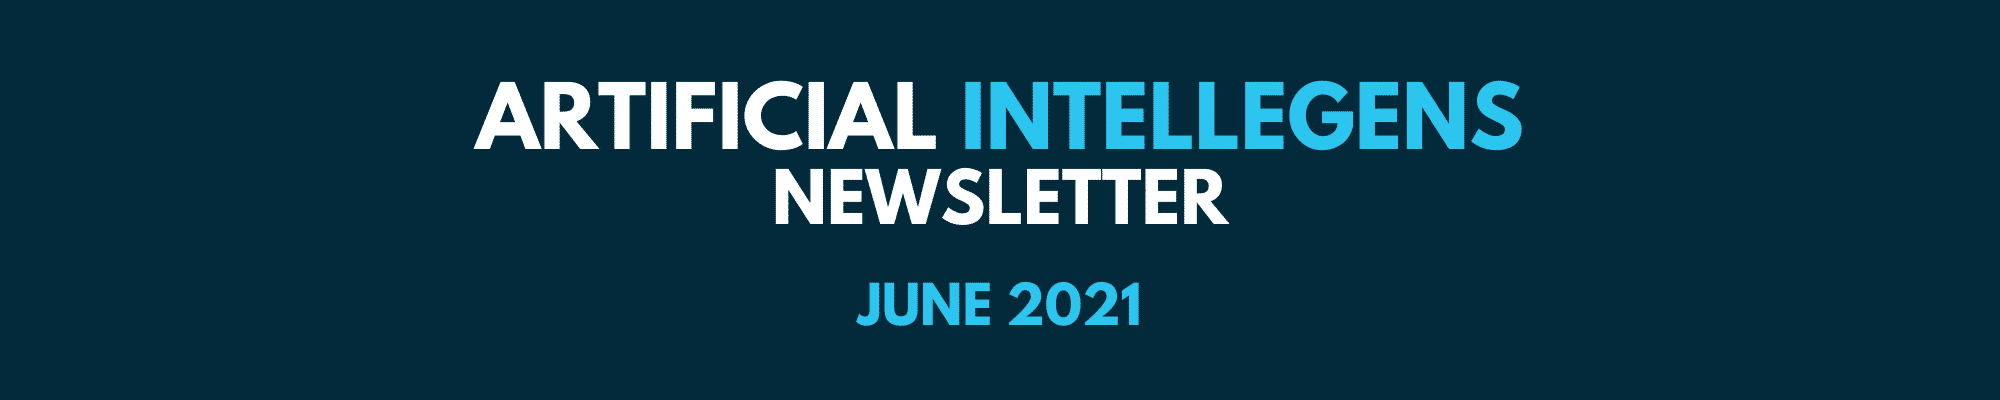 June 2021 newsletter header